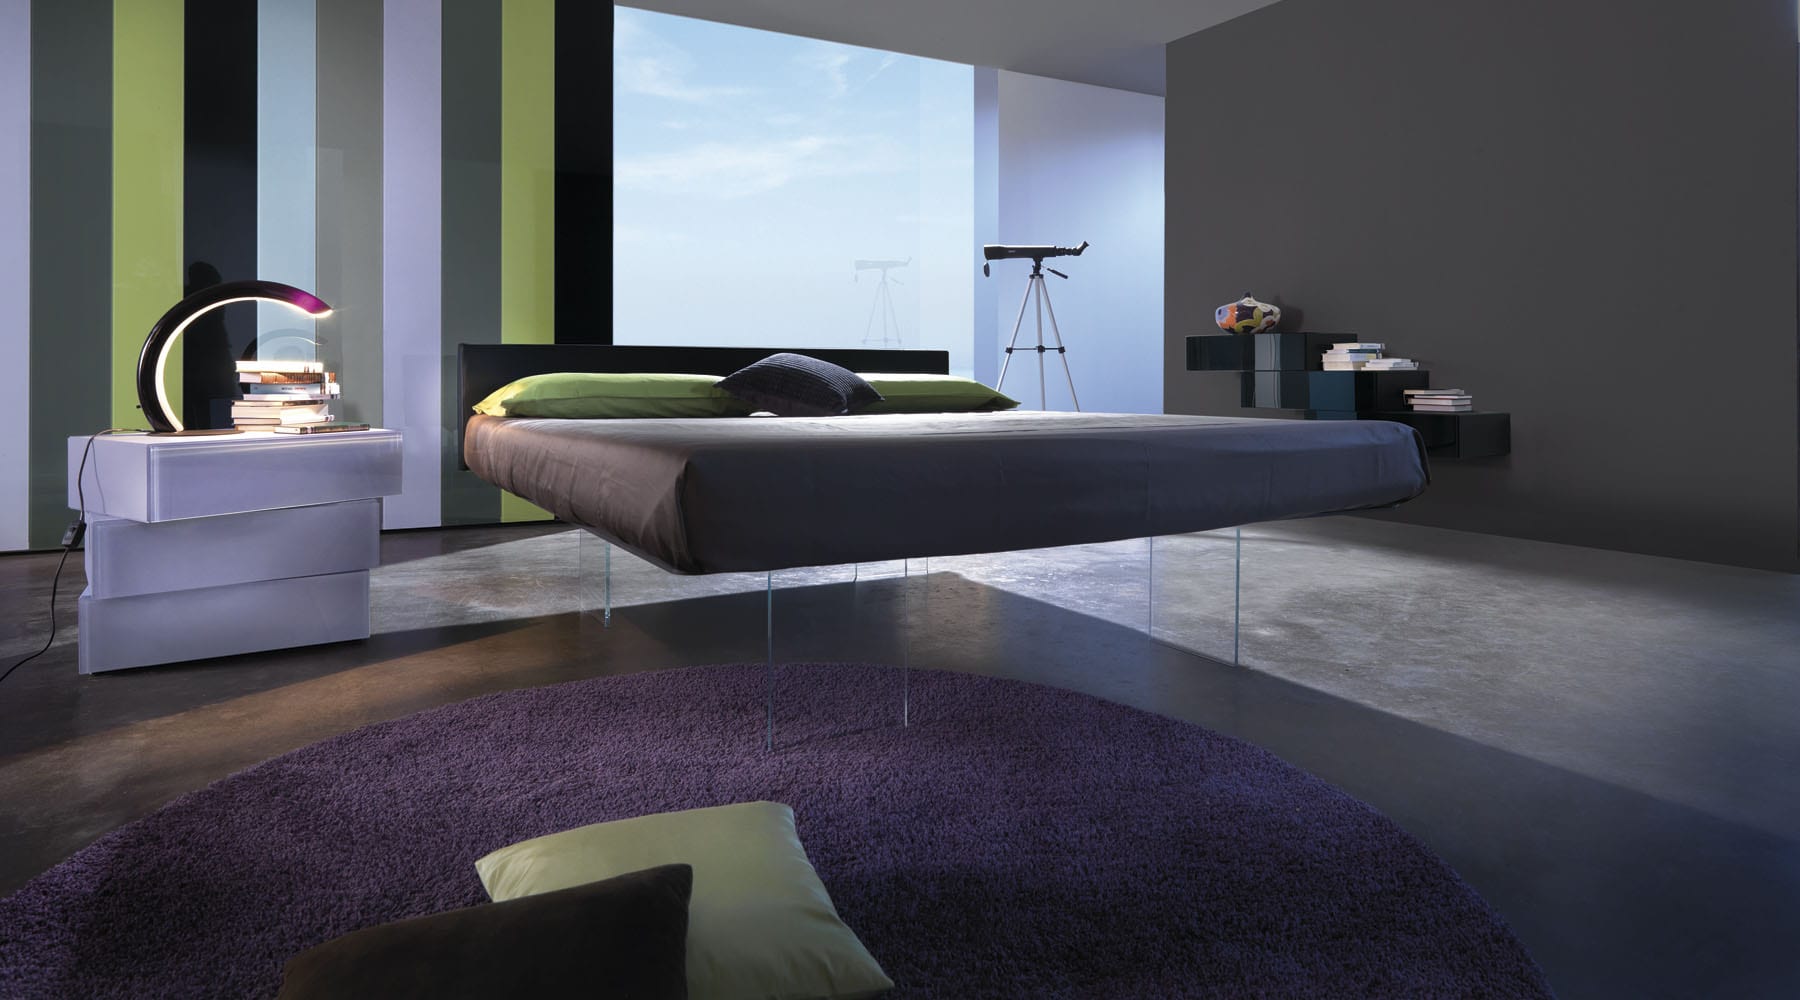 schlafzimmer idee für schlafzimmergestaltung mit wandfarbe grau und rundem teppich in lila auf einem betonbelag